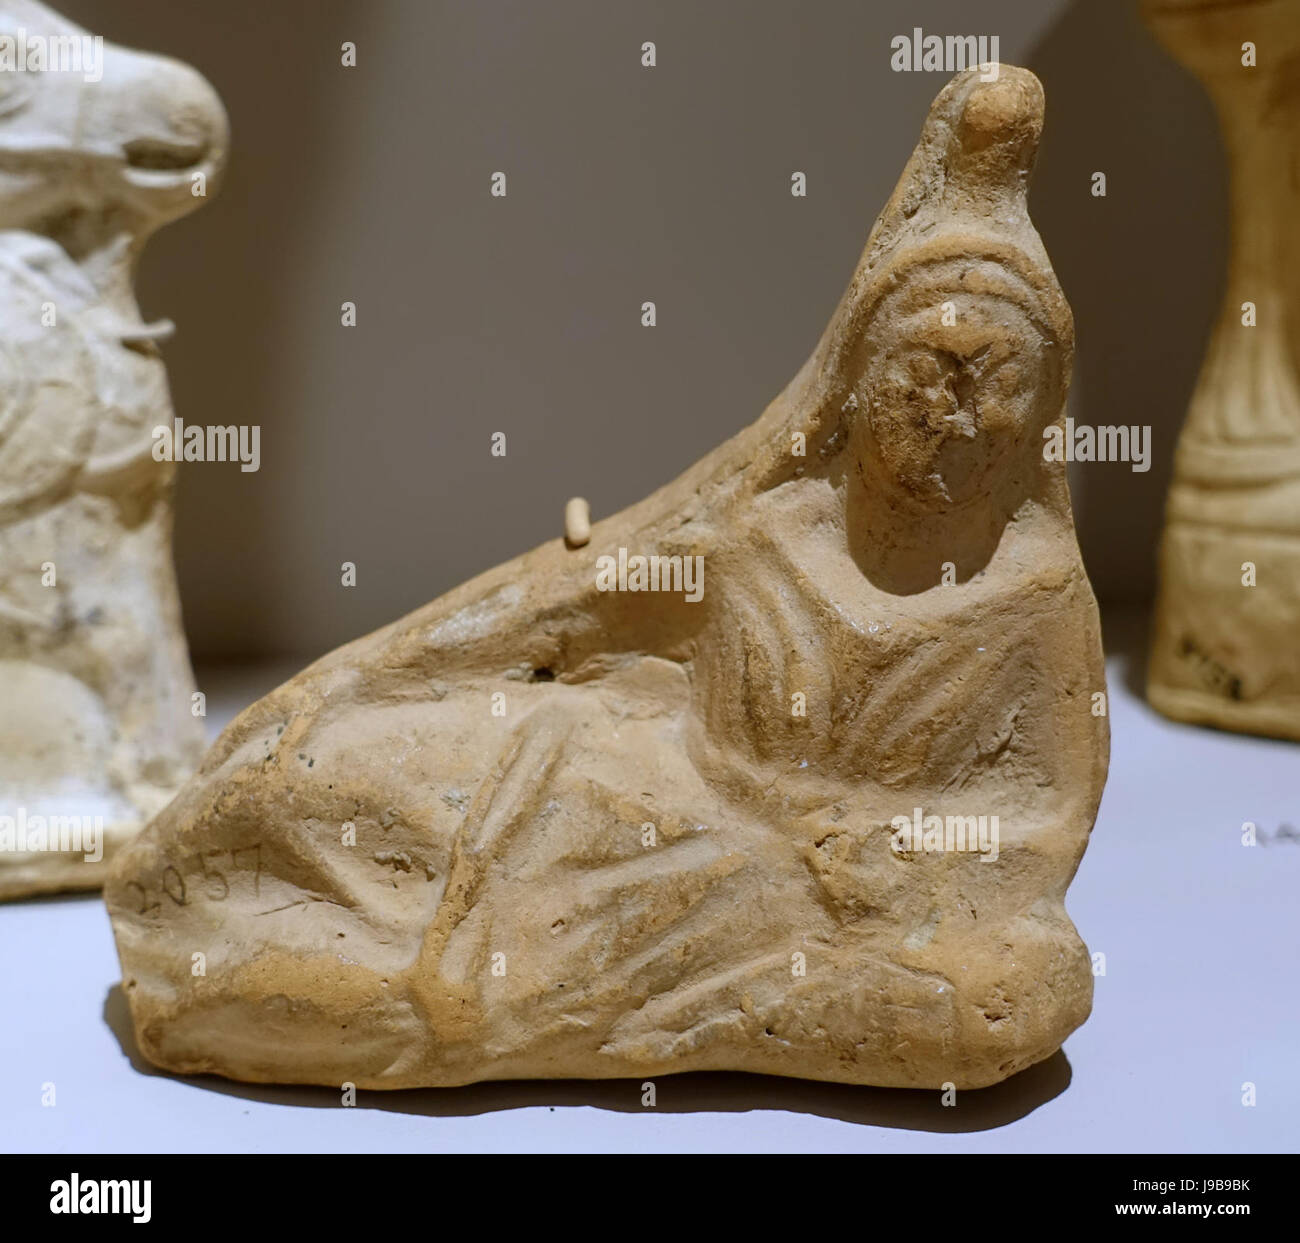 Liegende weibliche Figur, unbekannter Herkunft, möglicherweise Nippur, hellenistische, 332 37 v. Chr. Keramik Harvard Semitic Museum Cambridge, MA DSC06118 Stockfoto